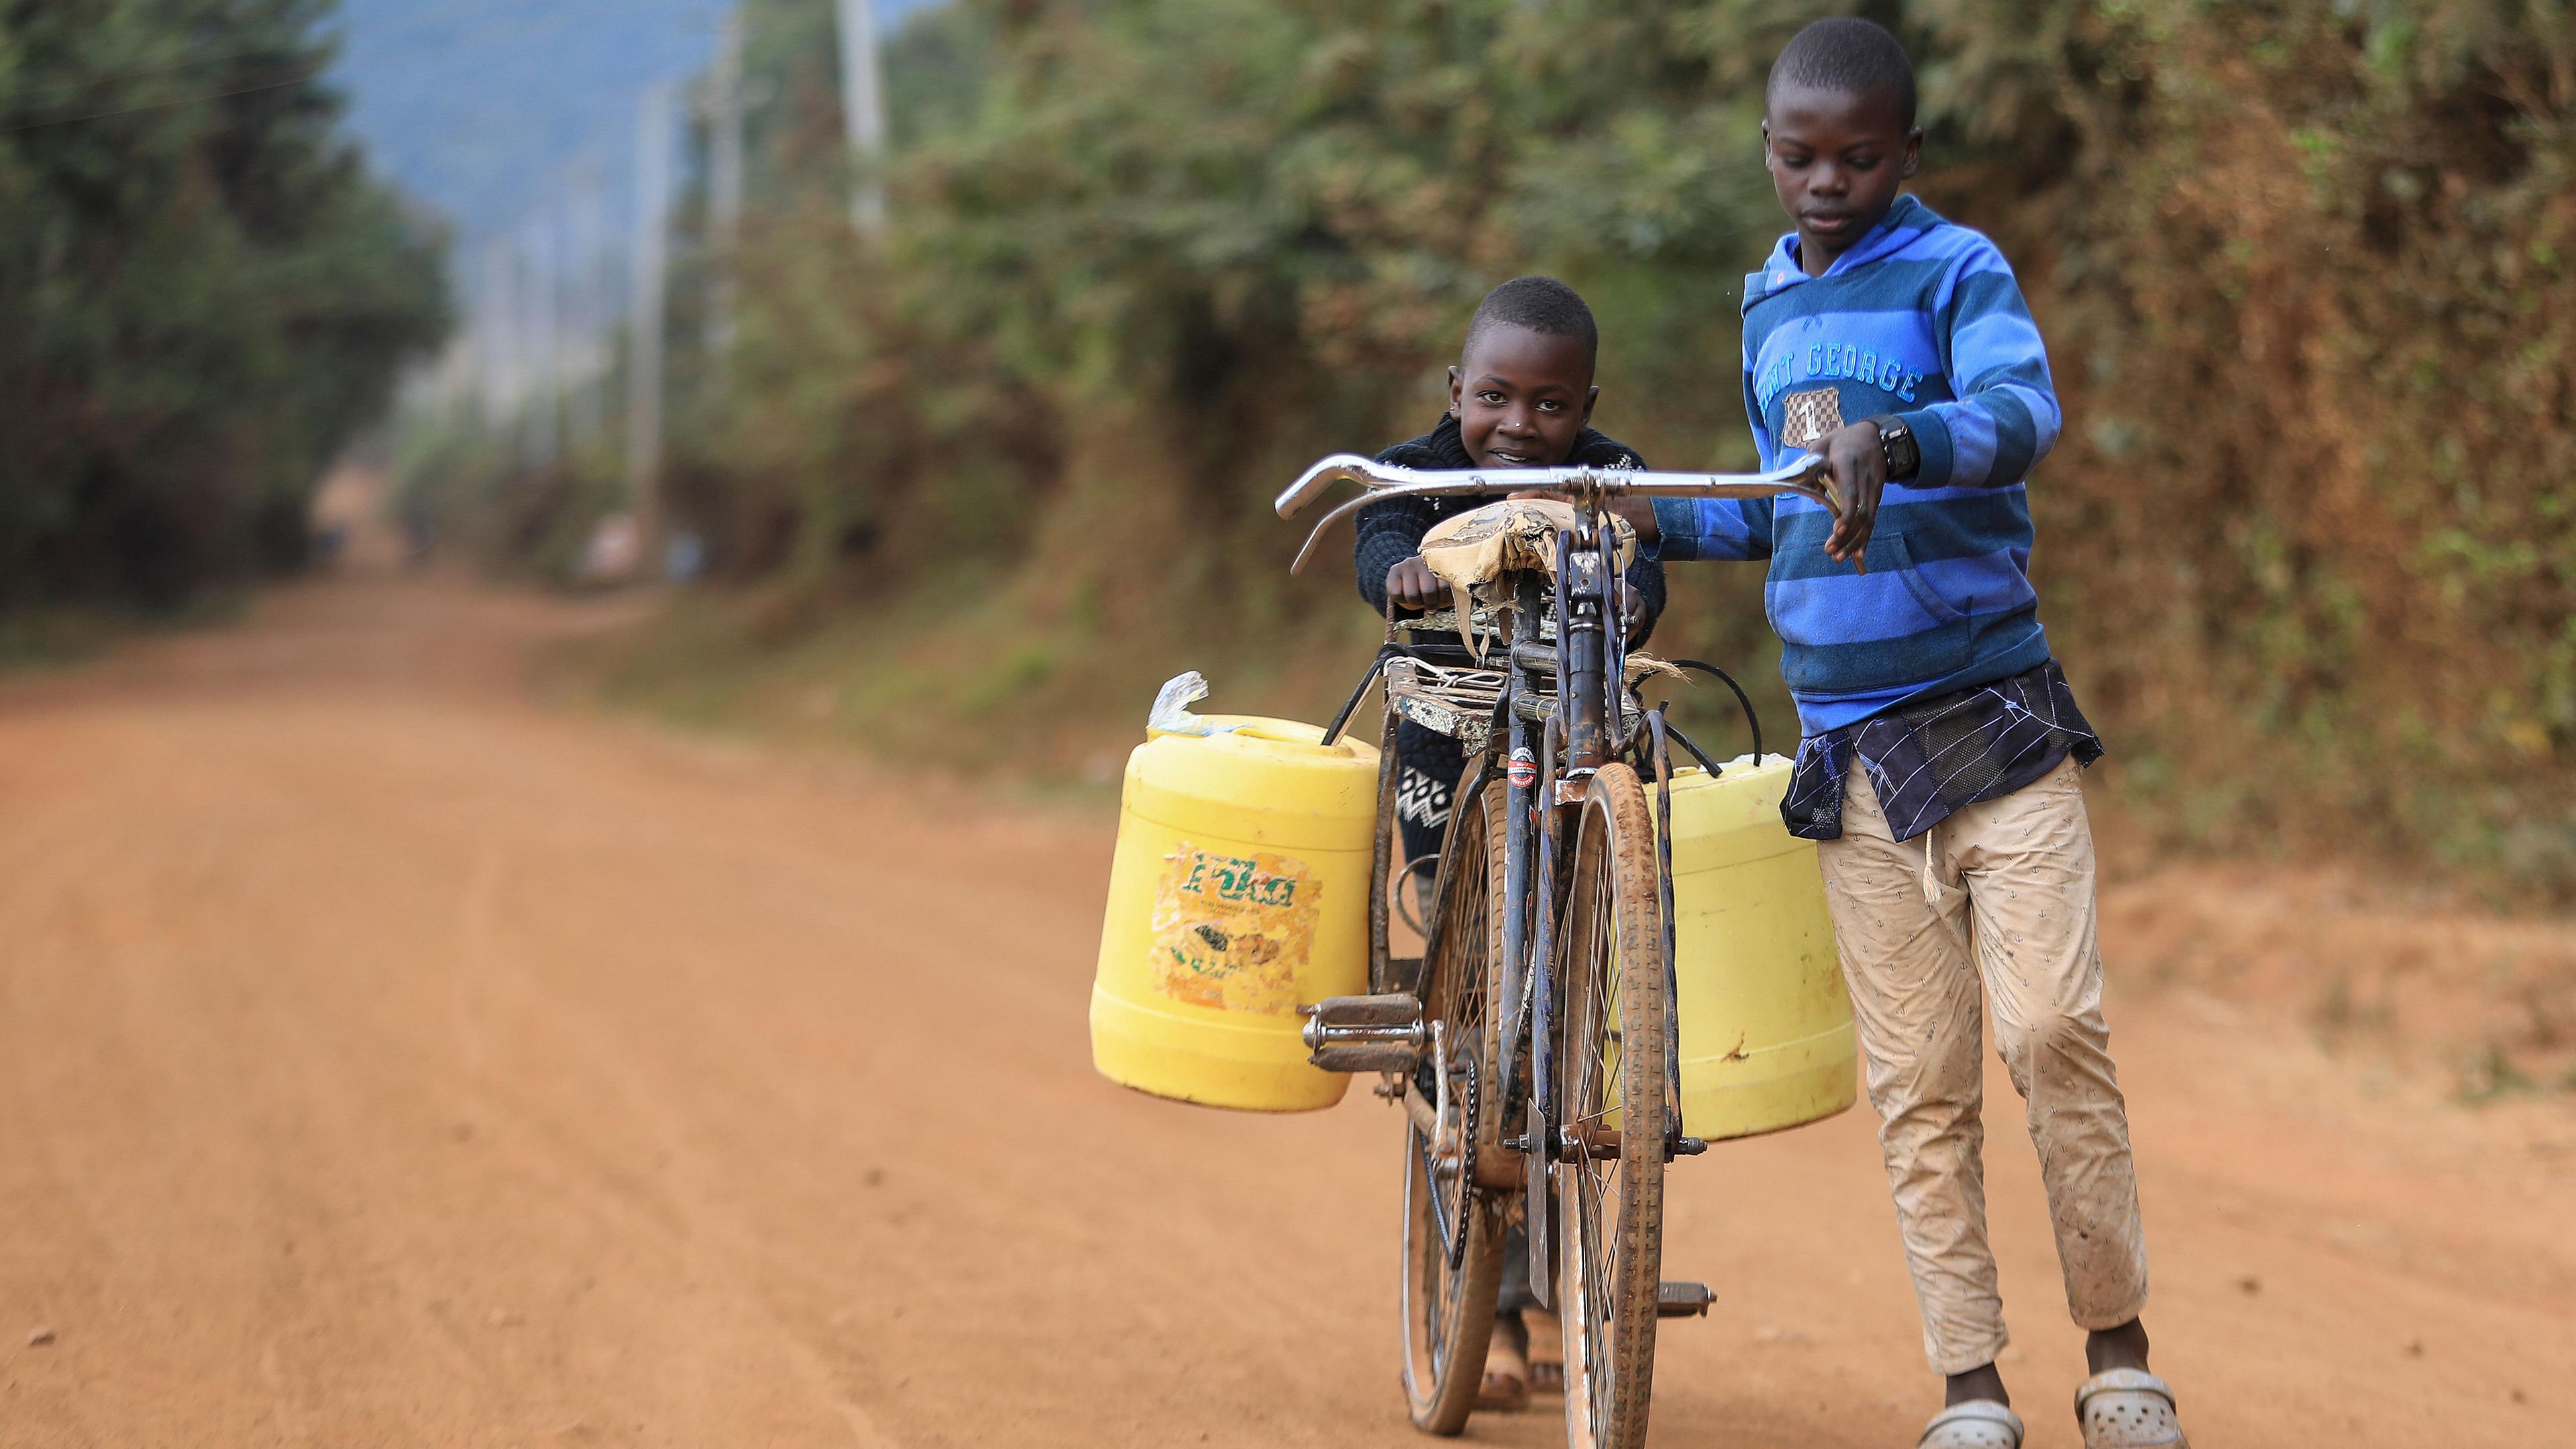 Zwei kenianische jungs benutzen ein Fahrrad, um Wasser in Kanistern in der ländlichen Stadt Oldonyo Sabuk in Machakos (Kenia) zu holen, aufgenommen am 28.07.2020